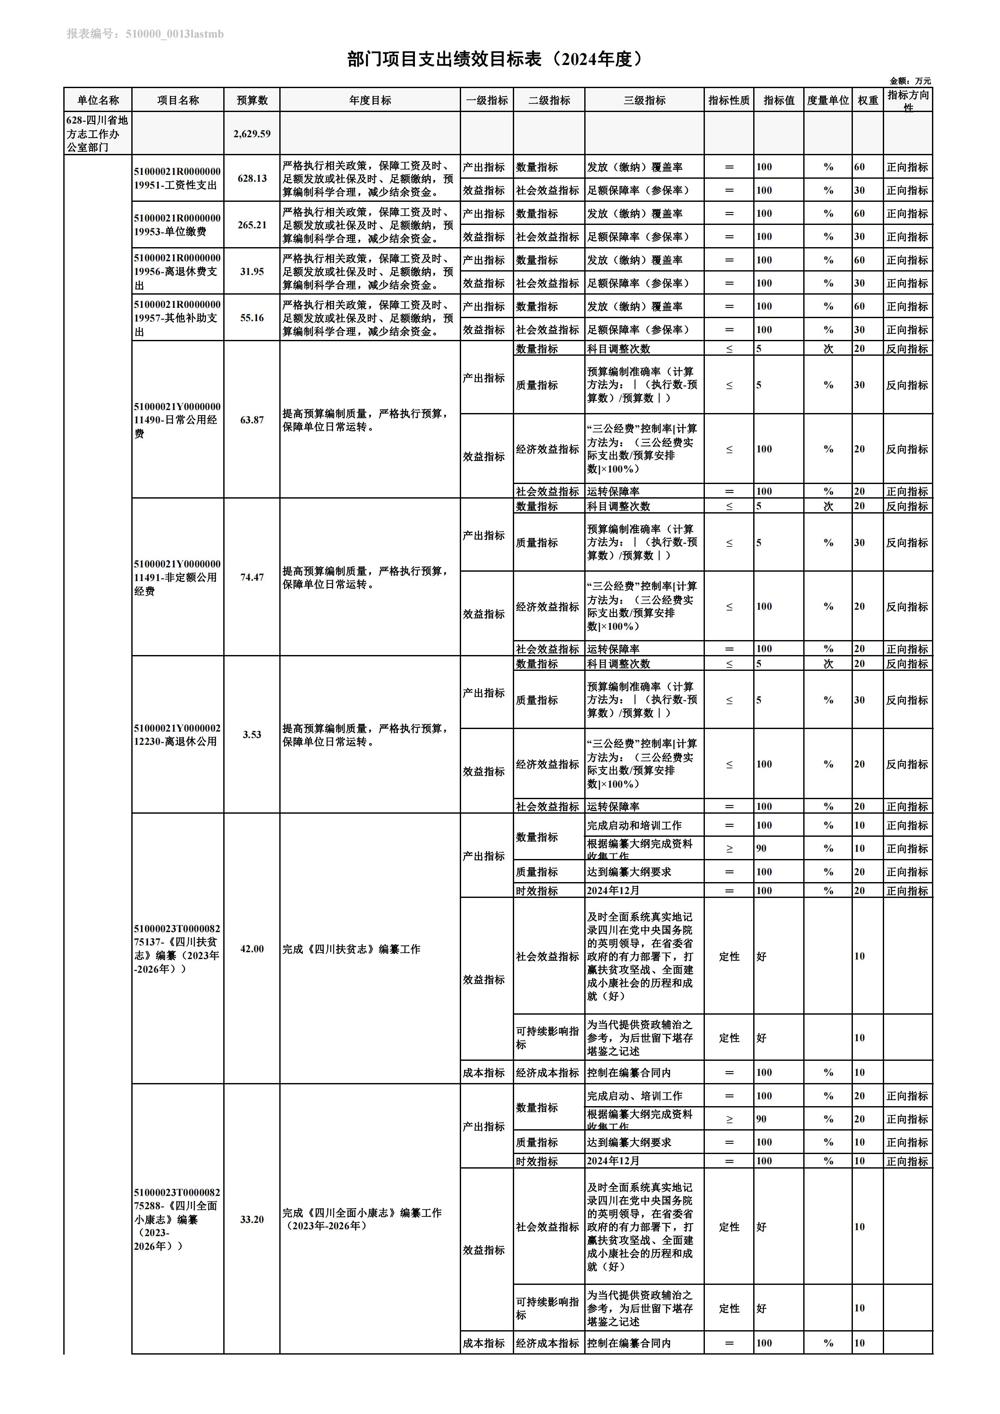 0226-部门项目支出绩效目标表_00